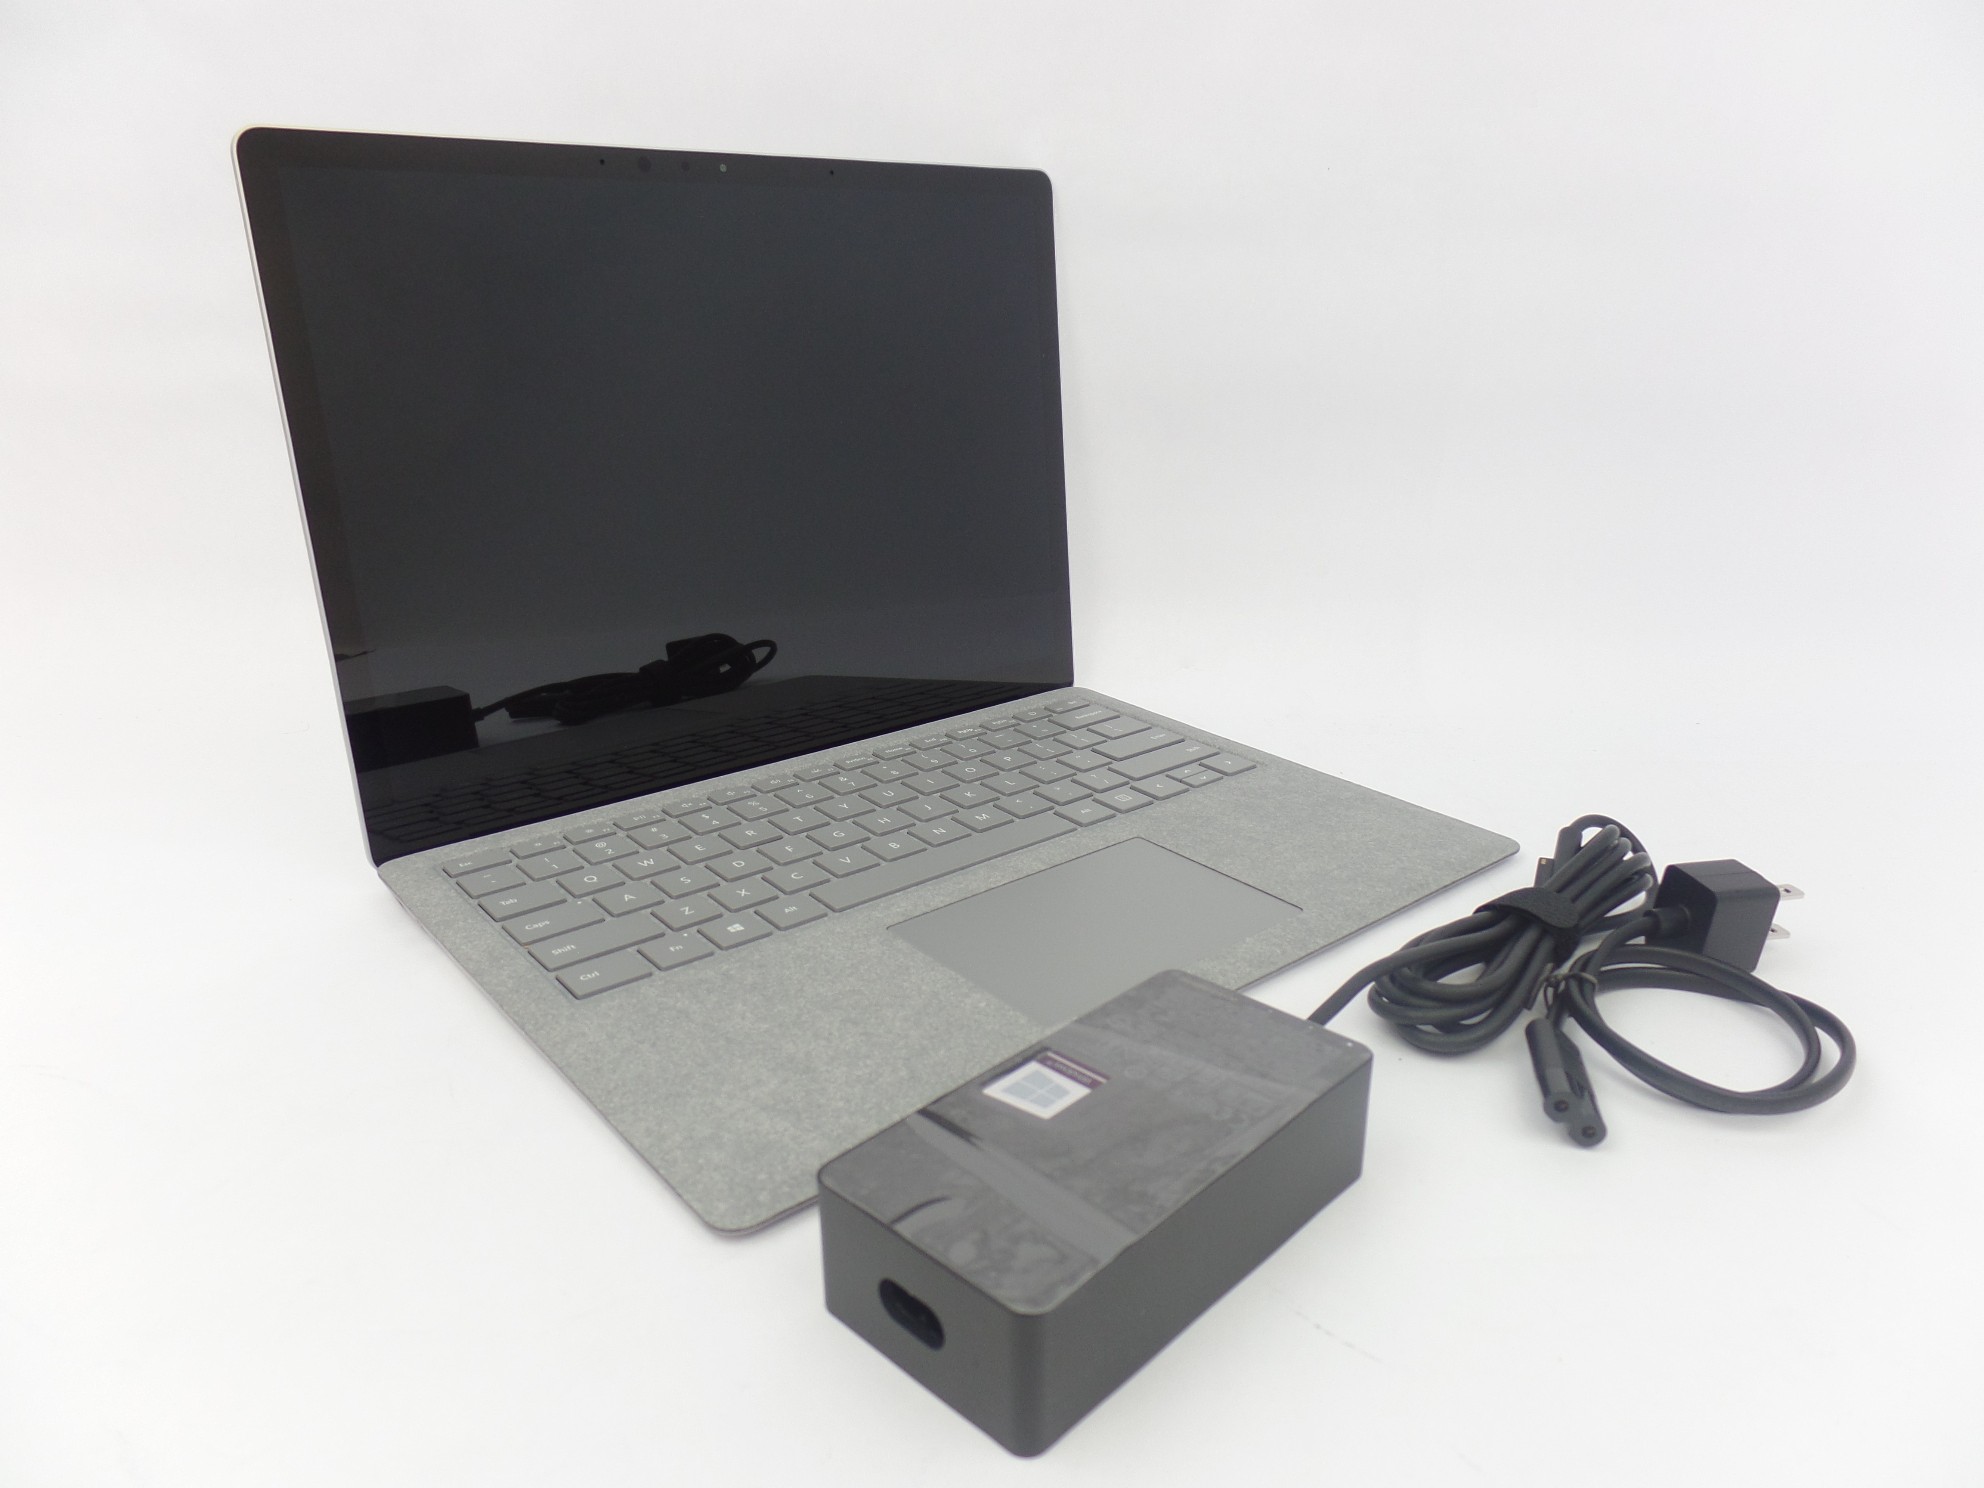 Microsoft Surface Laptop 1769 13.5" Touch i5-7200 2.5GHz 4GB 128GB SSD W10P U